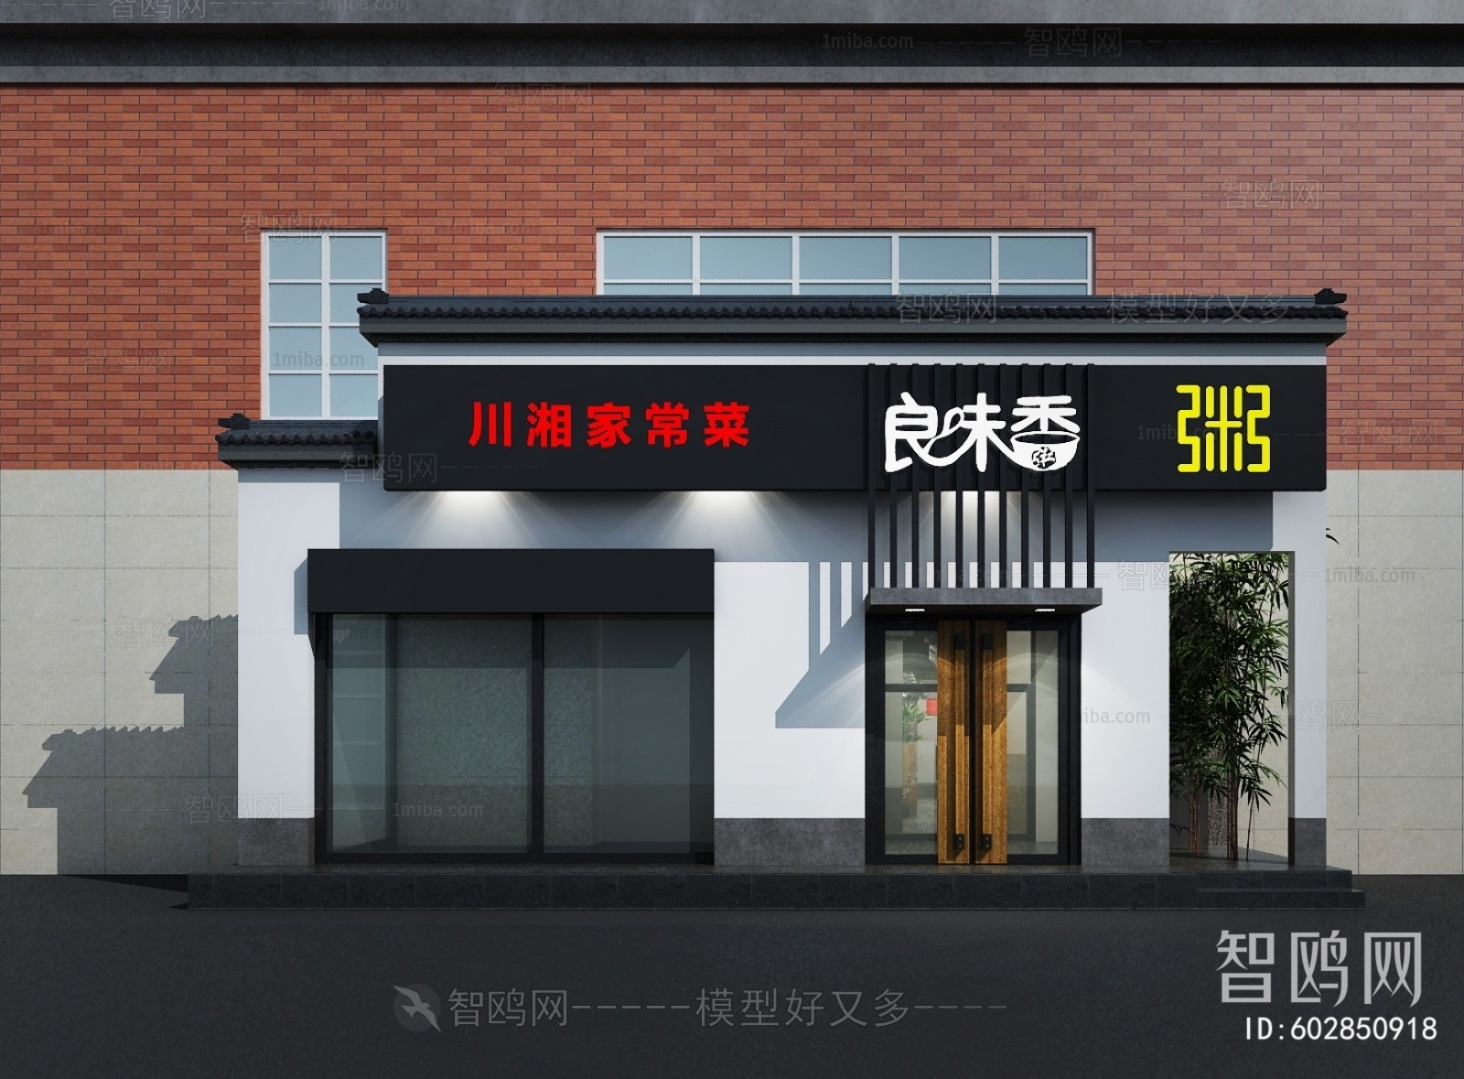 多场景-新中式餐厅+门头